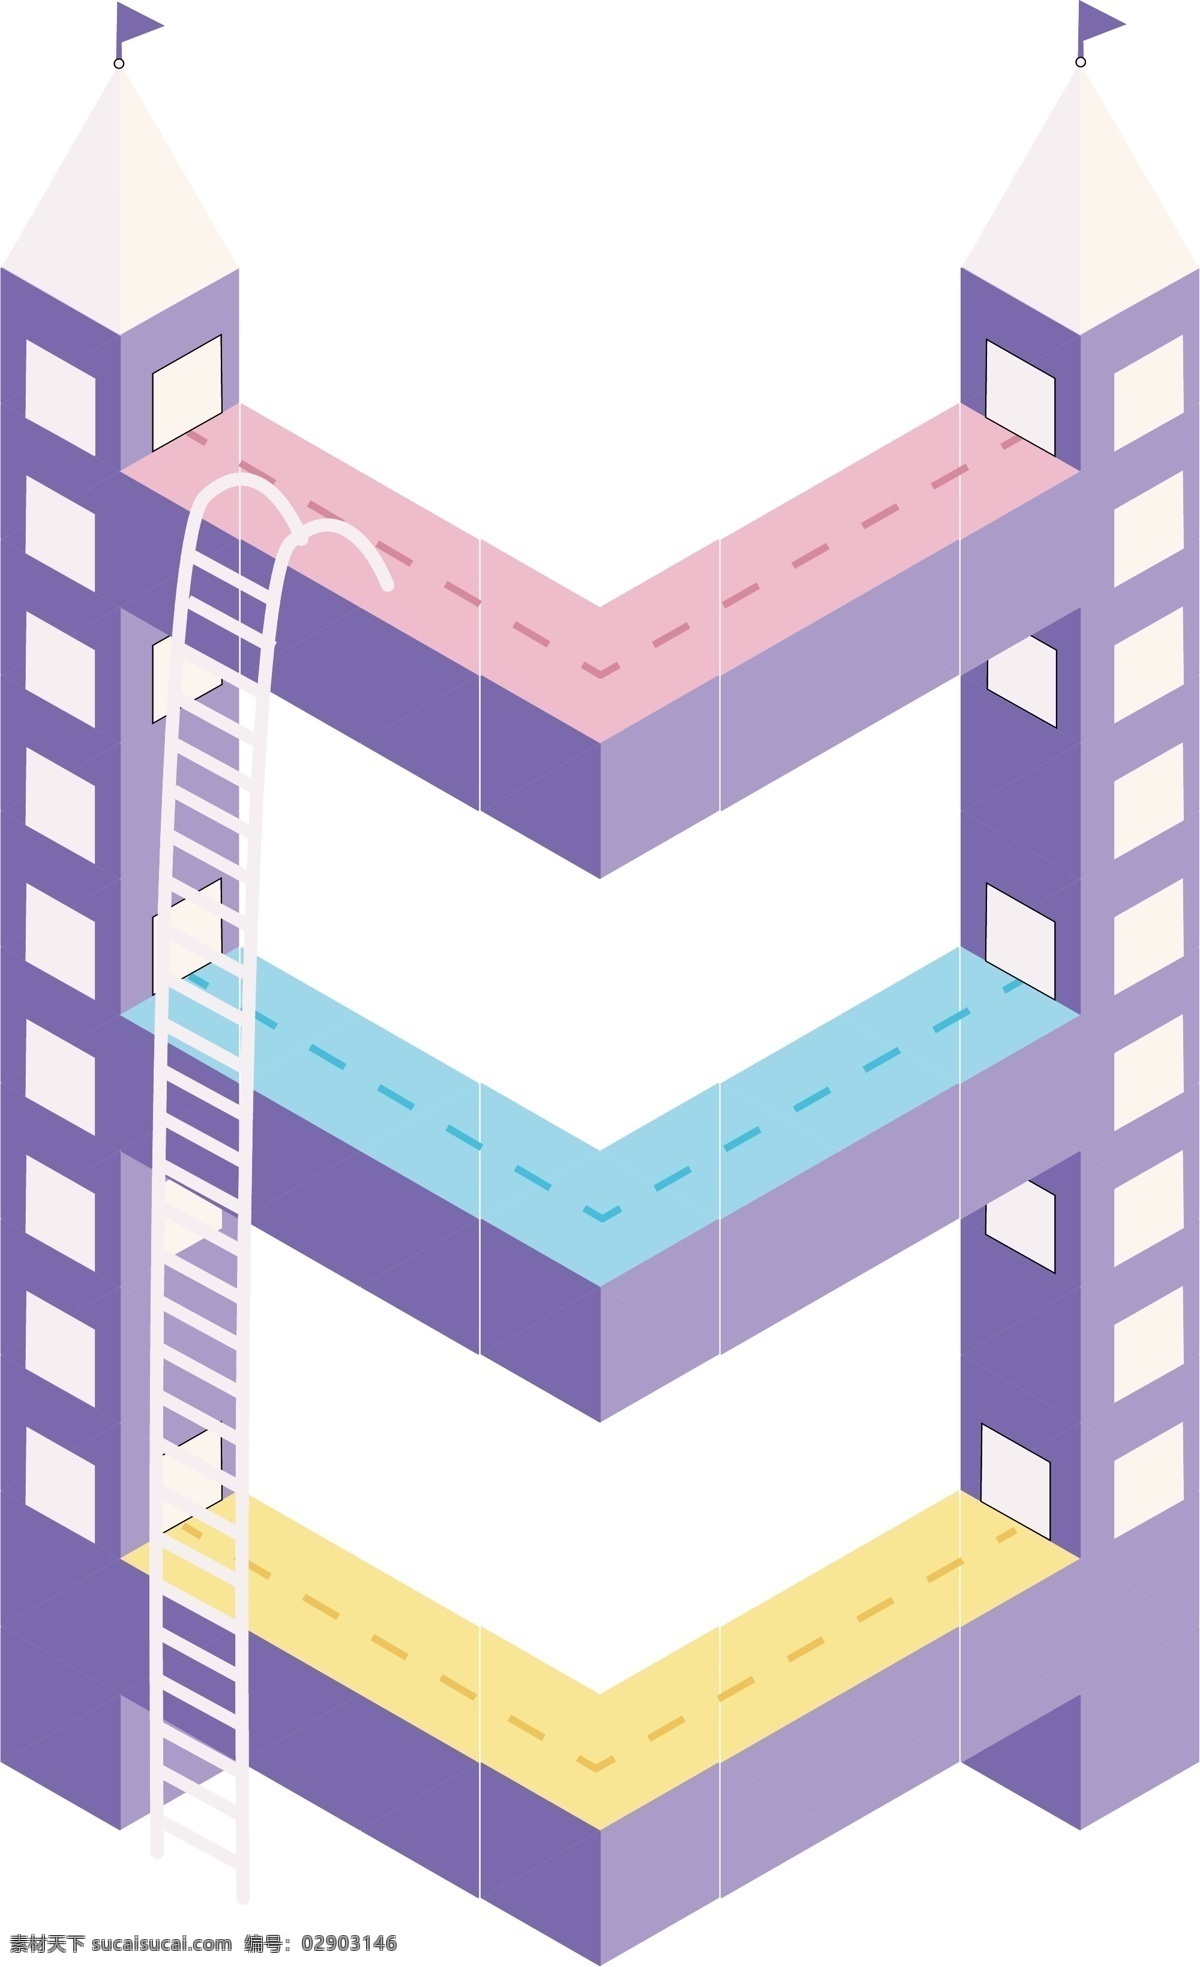 城堡 元素 立体 数字 马卡 龙 色系 可爱 卡通 矢量 建筑 紫色 梯子